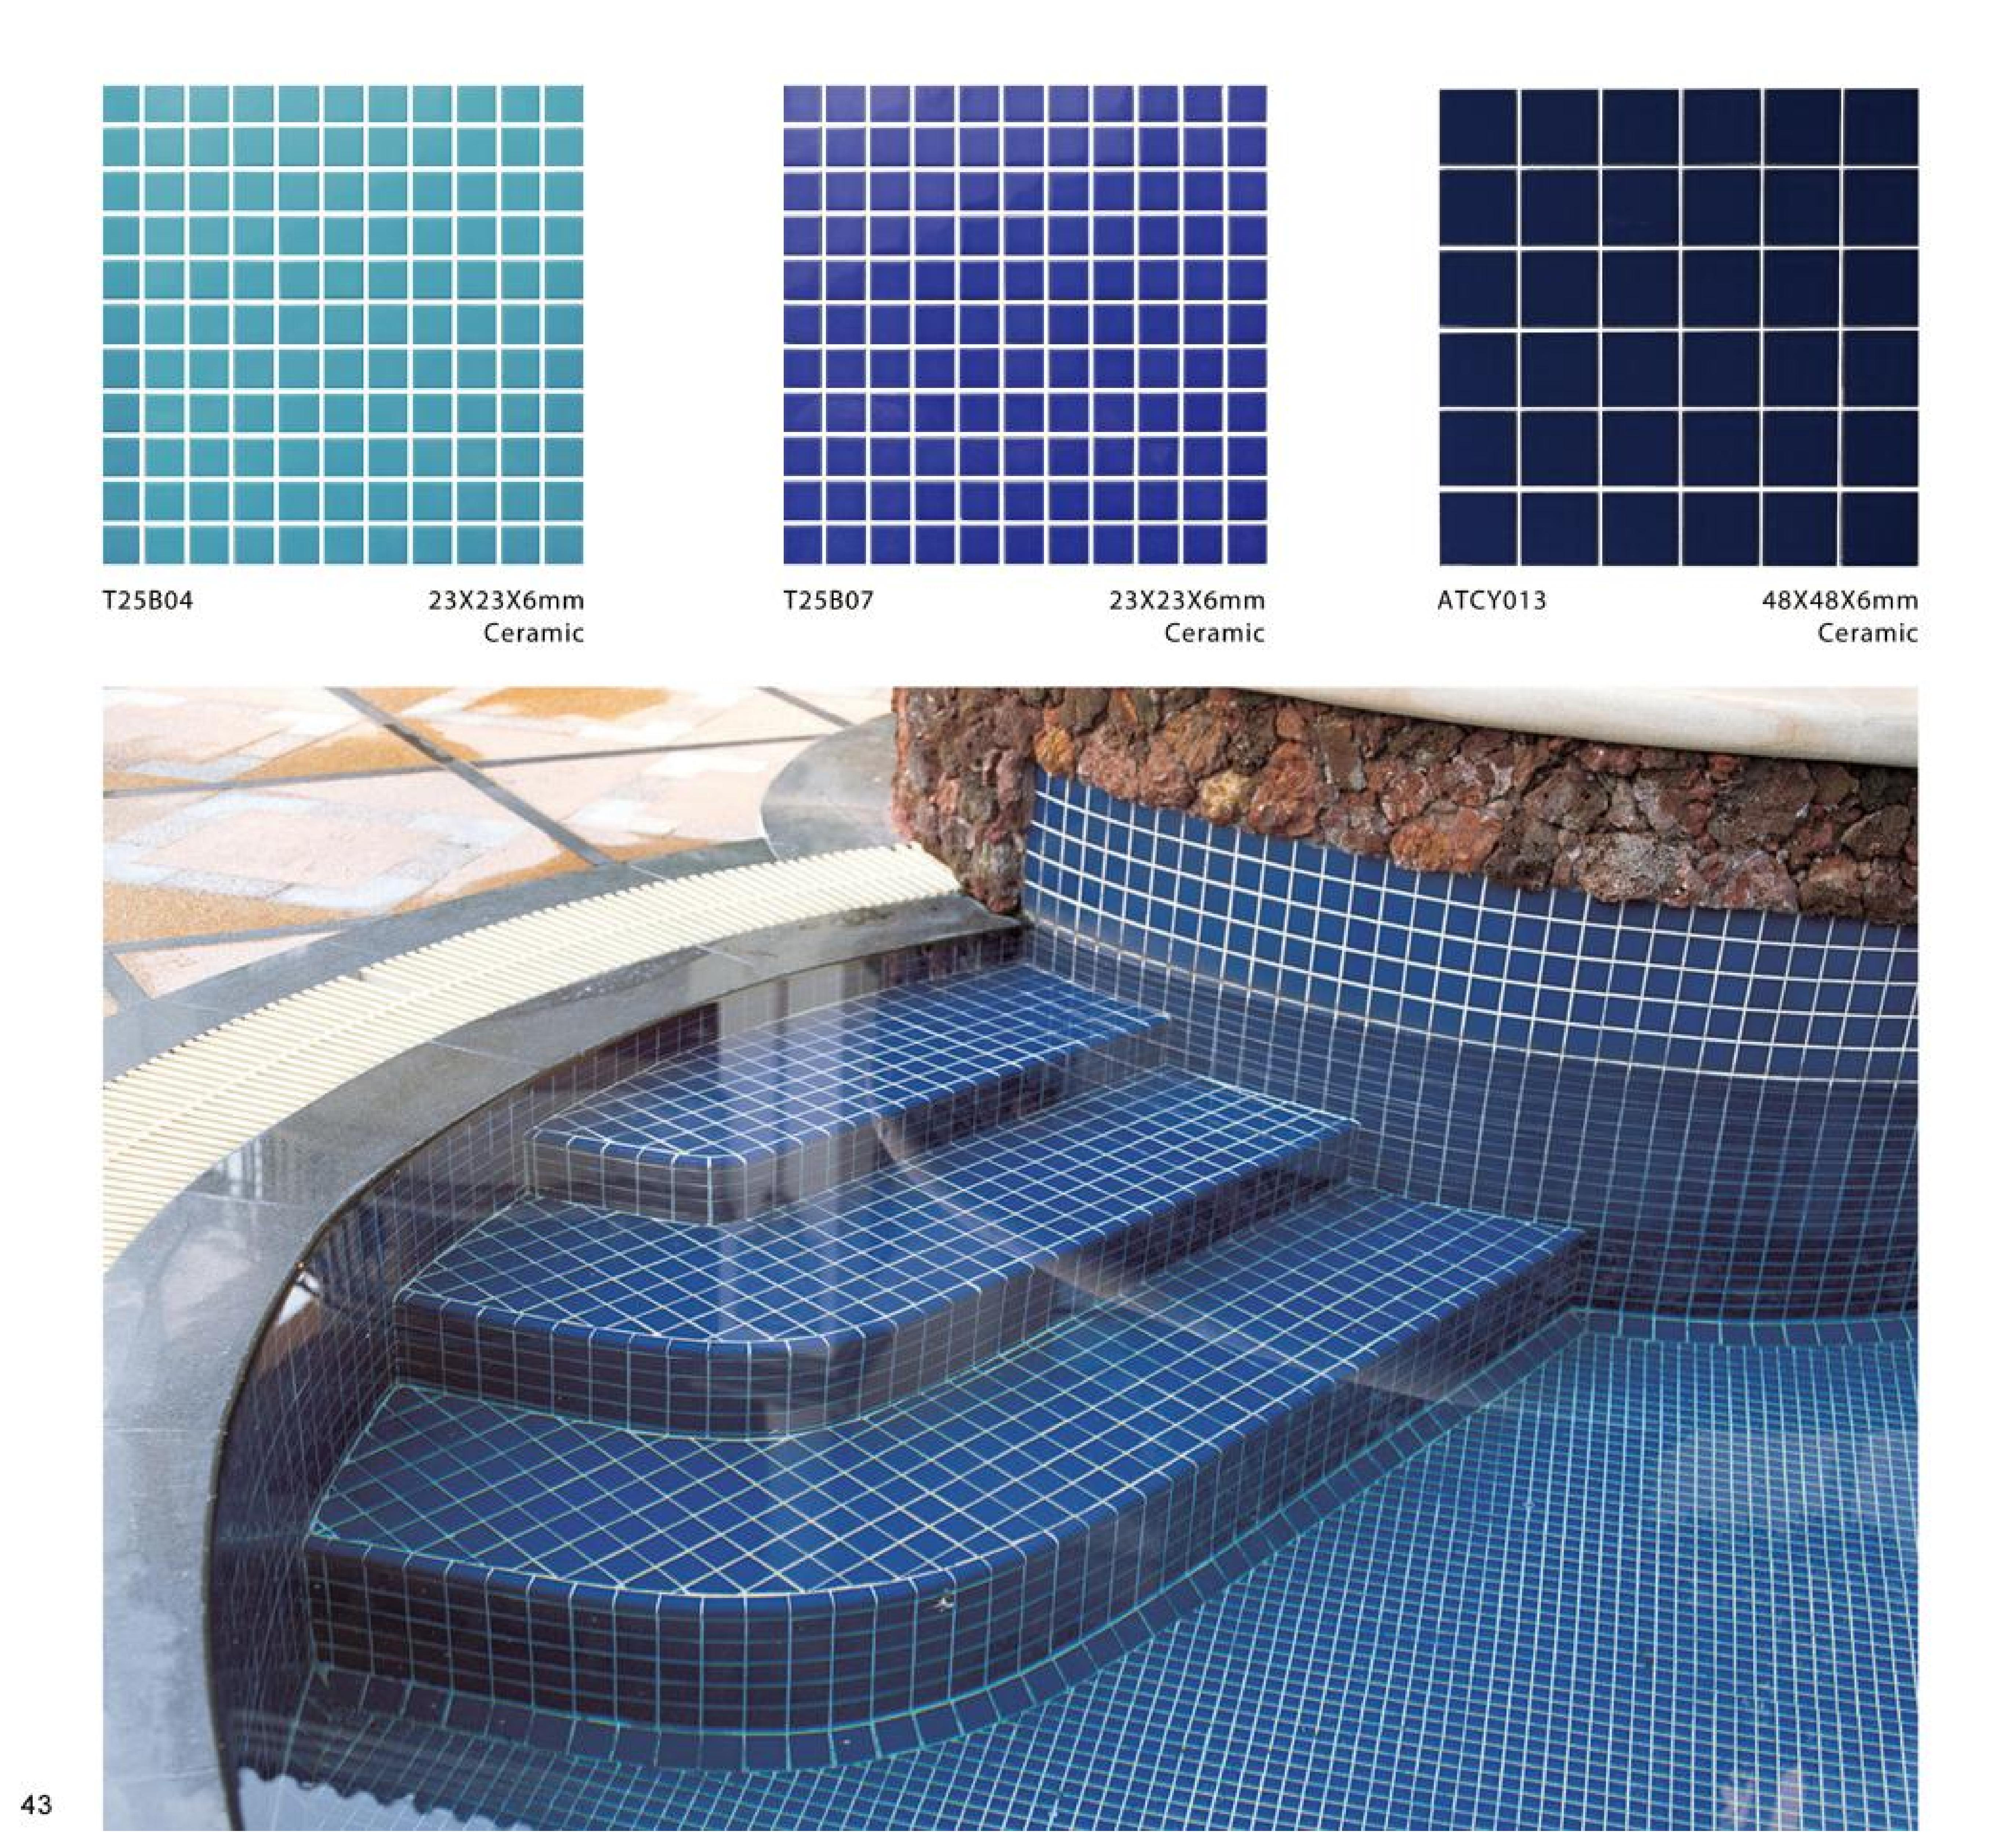 2023 Swimming Pool Tiles - Ralart_43.jpg